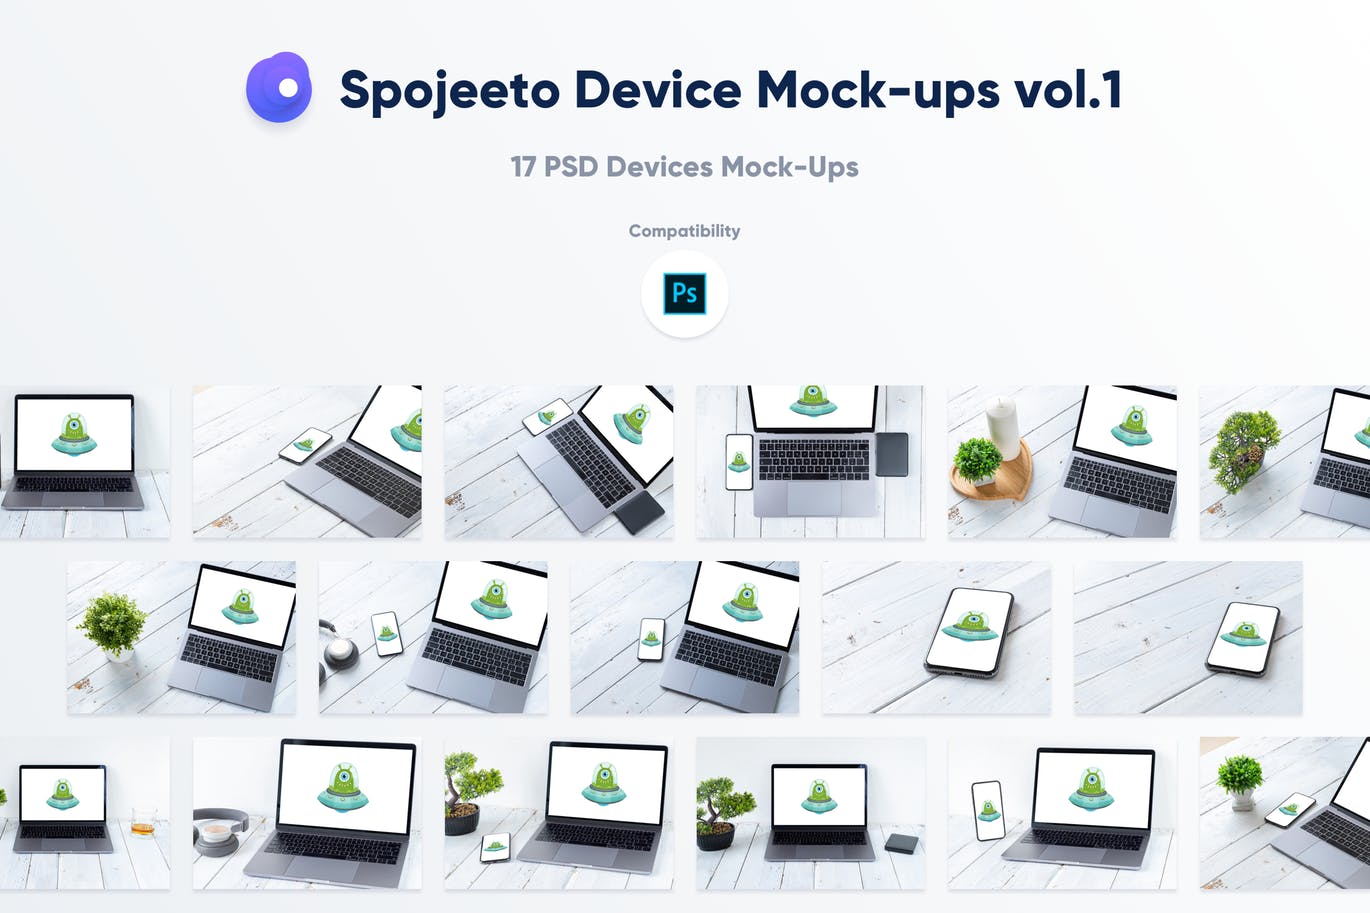 旧木桌上的Macbook&iPhone样机模板v1 Spojeeto Device Mock-ups vol.1插图